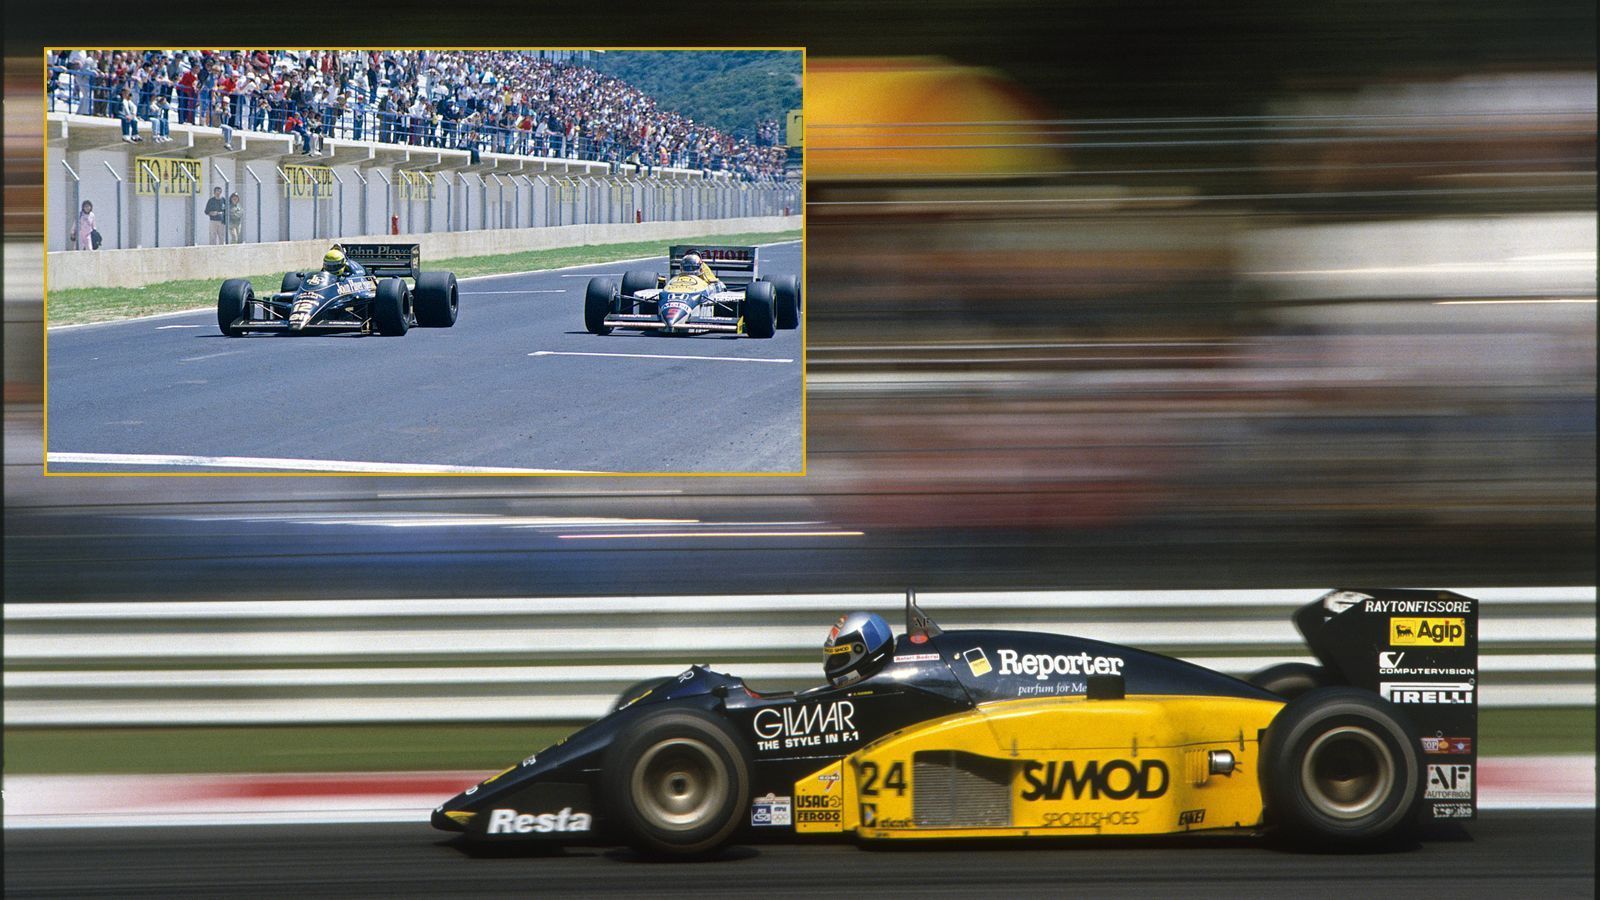 
                <strong>Erste Startreihe gesucht</strong><br>
                Doch es geht noch kurioser. Zweimal verschwand in der Formel 1 die komplette erste Startreihe. 1986 in Monza würgte Teo Fabi in der Einführungsrunde den Motor ab und musste von hinten starten. Alain Prost sprang in letzter Minute in sein angestammtes Rennauto, weil im Ersatzwagen die Lichtmaschine streikte. Zu spät. Er musste das Rennen aus der Boxengasse aufnehmen und wurde später ganz disqualifiziert. Auch der GP von Belgien 2001 lieferte einen dramatischen Rennbeginn. Beim zweiten Versuch, das Feld in die Aufwärmrunde zu schicken, rührte sich Juan Pablo Montoyas Bolide nicht vom Fleck, er wurde nach hinten relegiert. Das Rennen war erst vier Runden alt, als Luciano Burti einen furchterregenden Unfall baute - Abbruch, eine Stunde Pause. Der Grand Prix wurde mit dem Stand des Zieleinlaufs nach den ersten vier Runden neu gestartet, also Michael Schumacher vor Bruder Ralf.
              